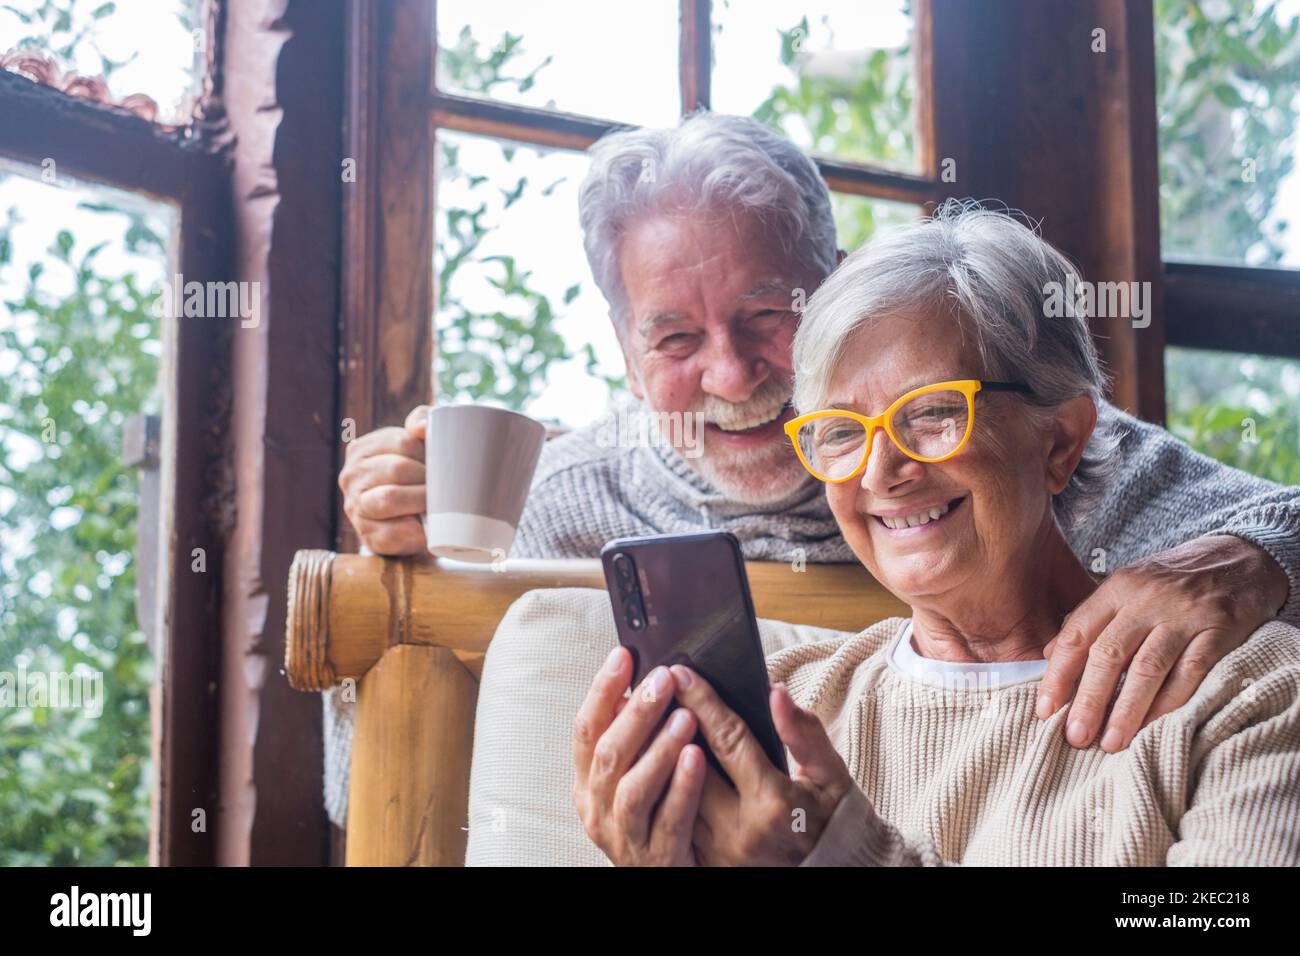 Coppia di due persone anziane e mature a casa utilizzando il telefono insieme nel divano. Smartphone per uso senior divertente e divertente da guardare. Concetto di tempo libero e libero nel soggiorno Foto Stock